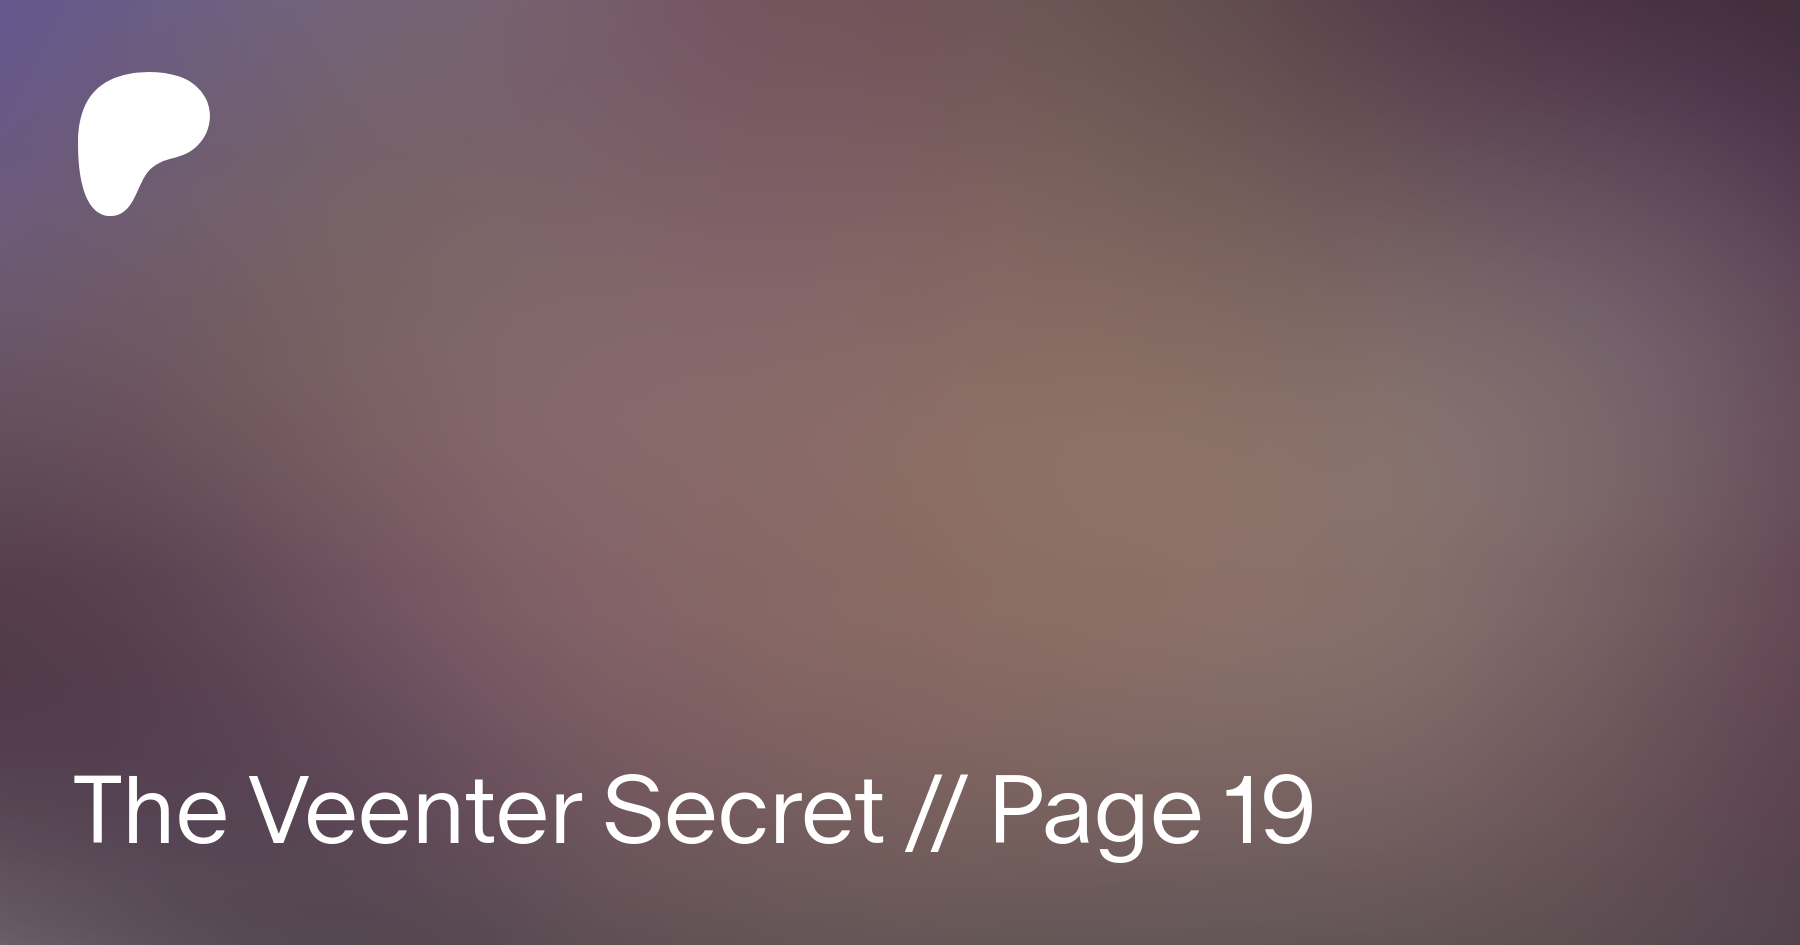 The veenter secret secret